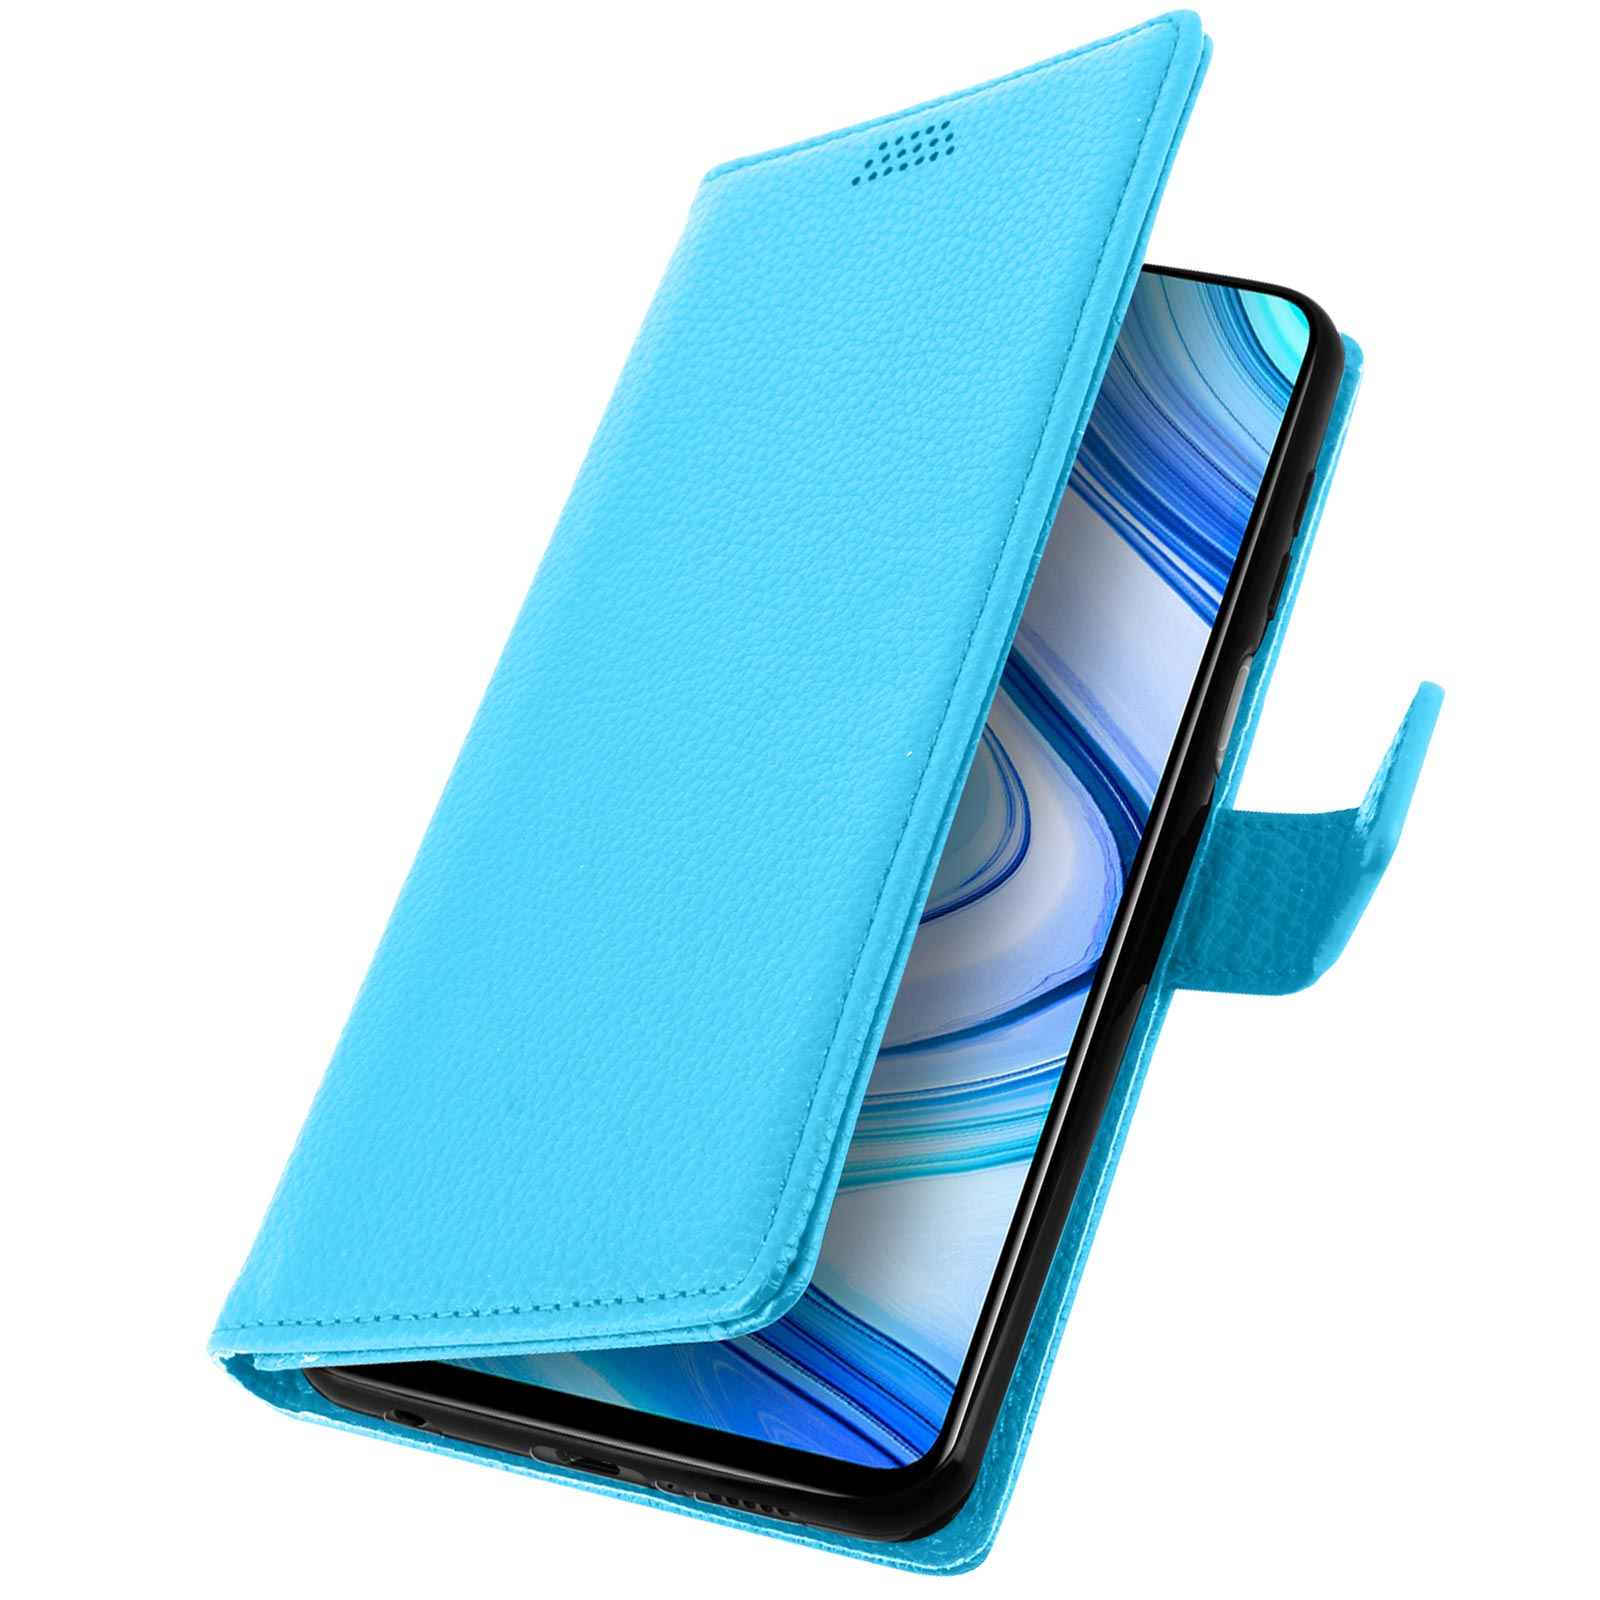 Blau Series, Note AVIZAR Xiaomi, Redmi Lenny Bookcover, 9S,